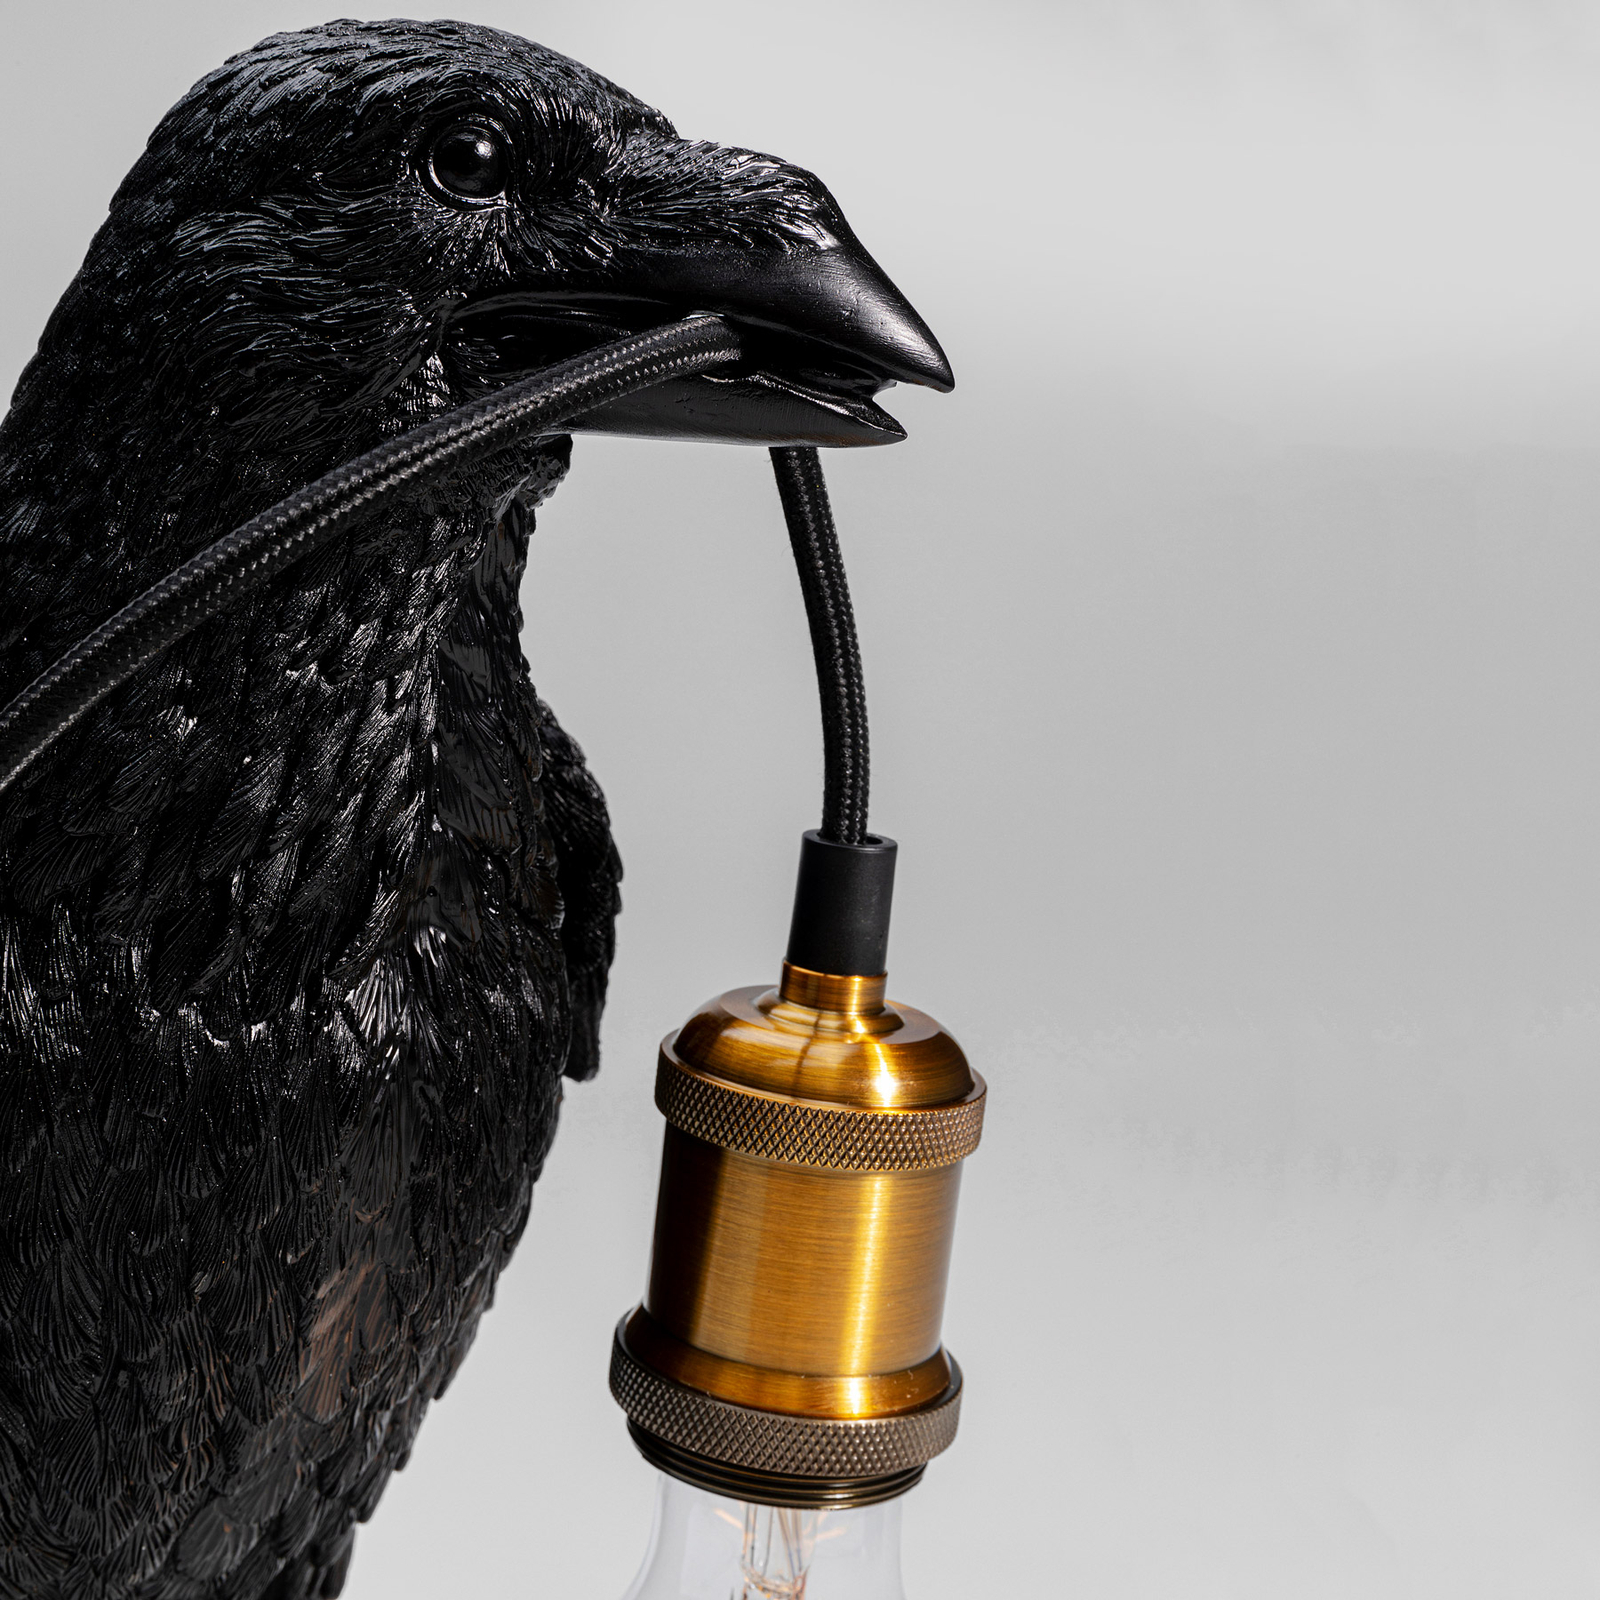 KARE Animal Crow επιτραπέζιο φωτιστικό σε σχήμα κορακιού